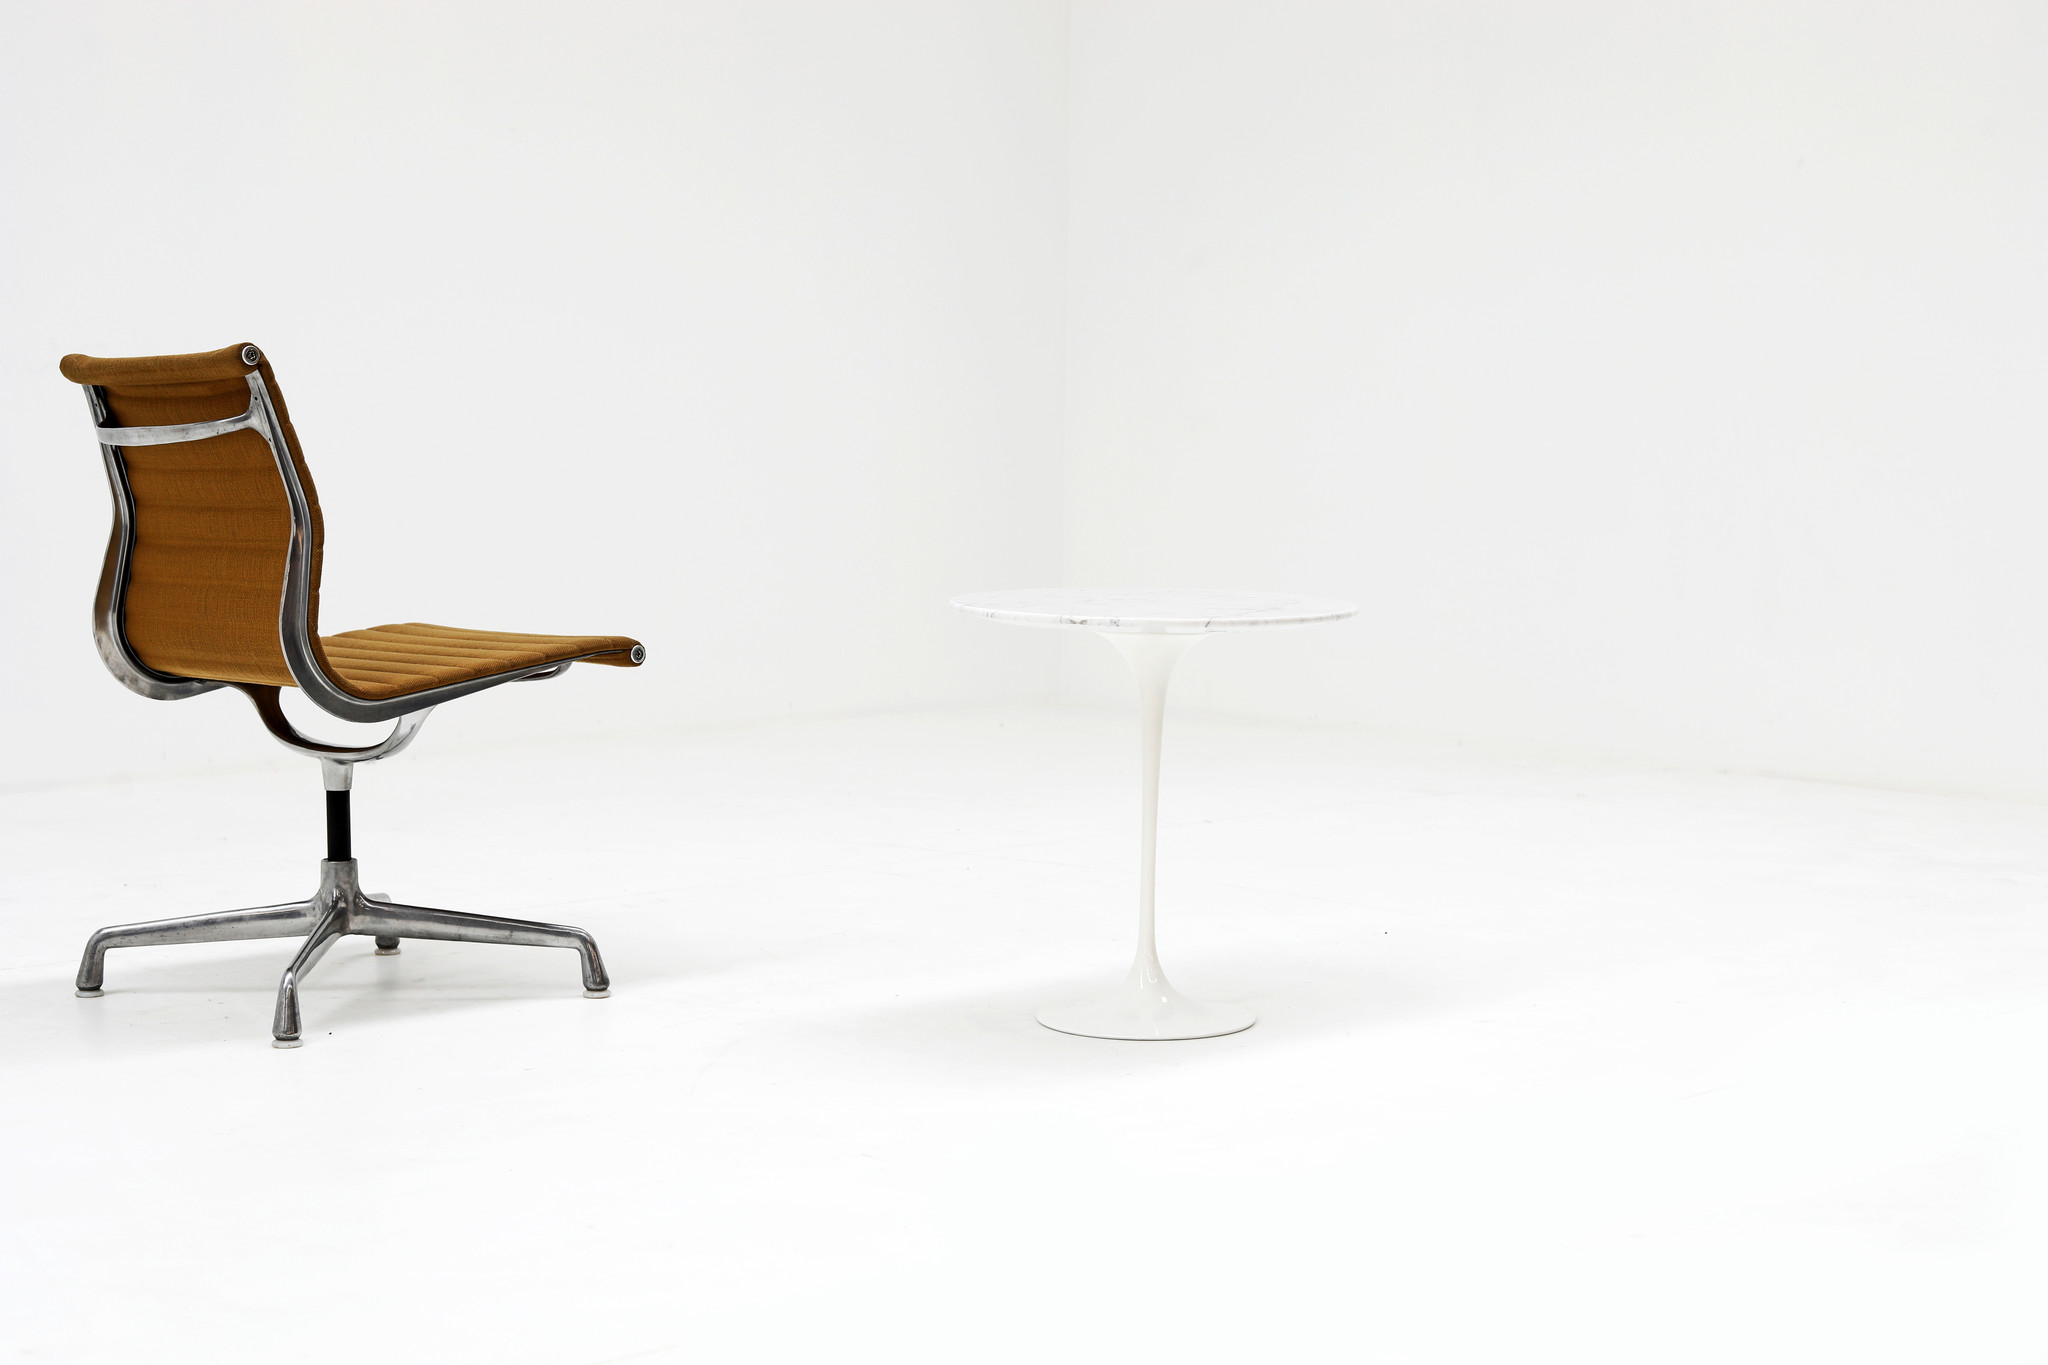 Table d'appoint Knoll conçue par Eero Saarinen, années 1950